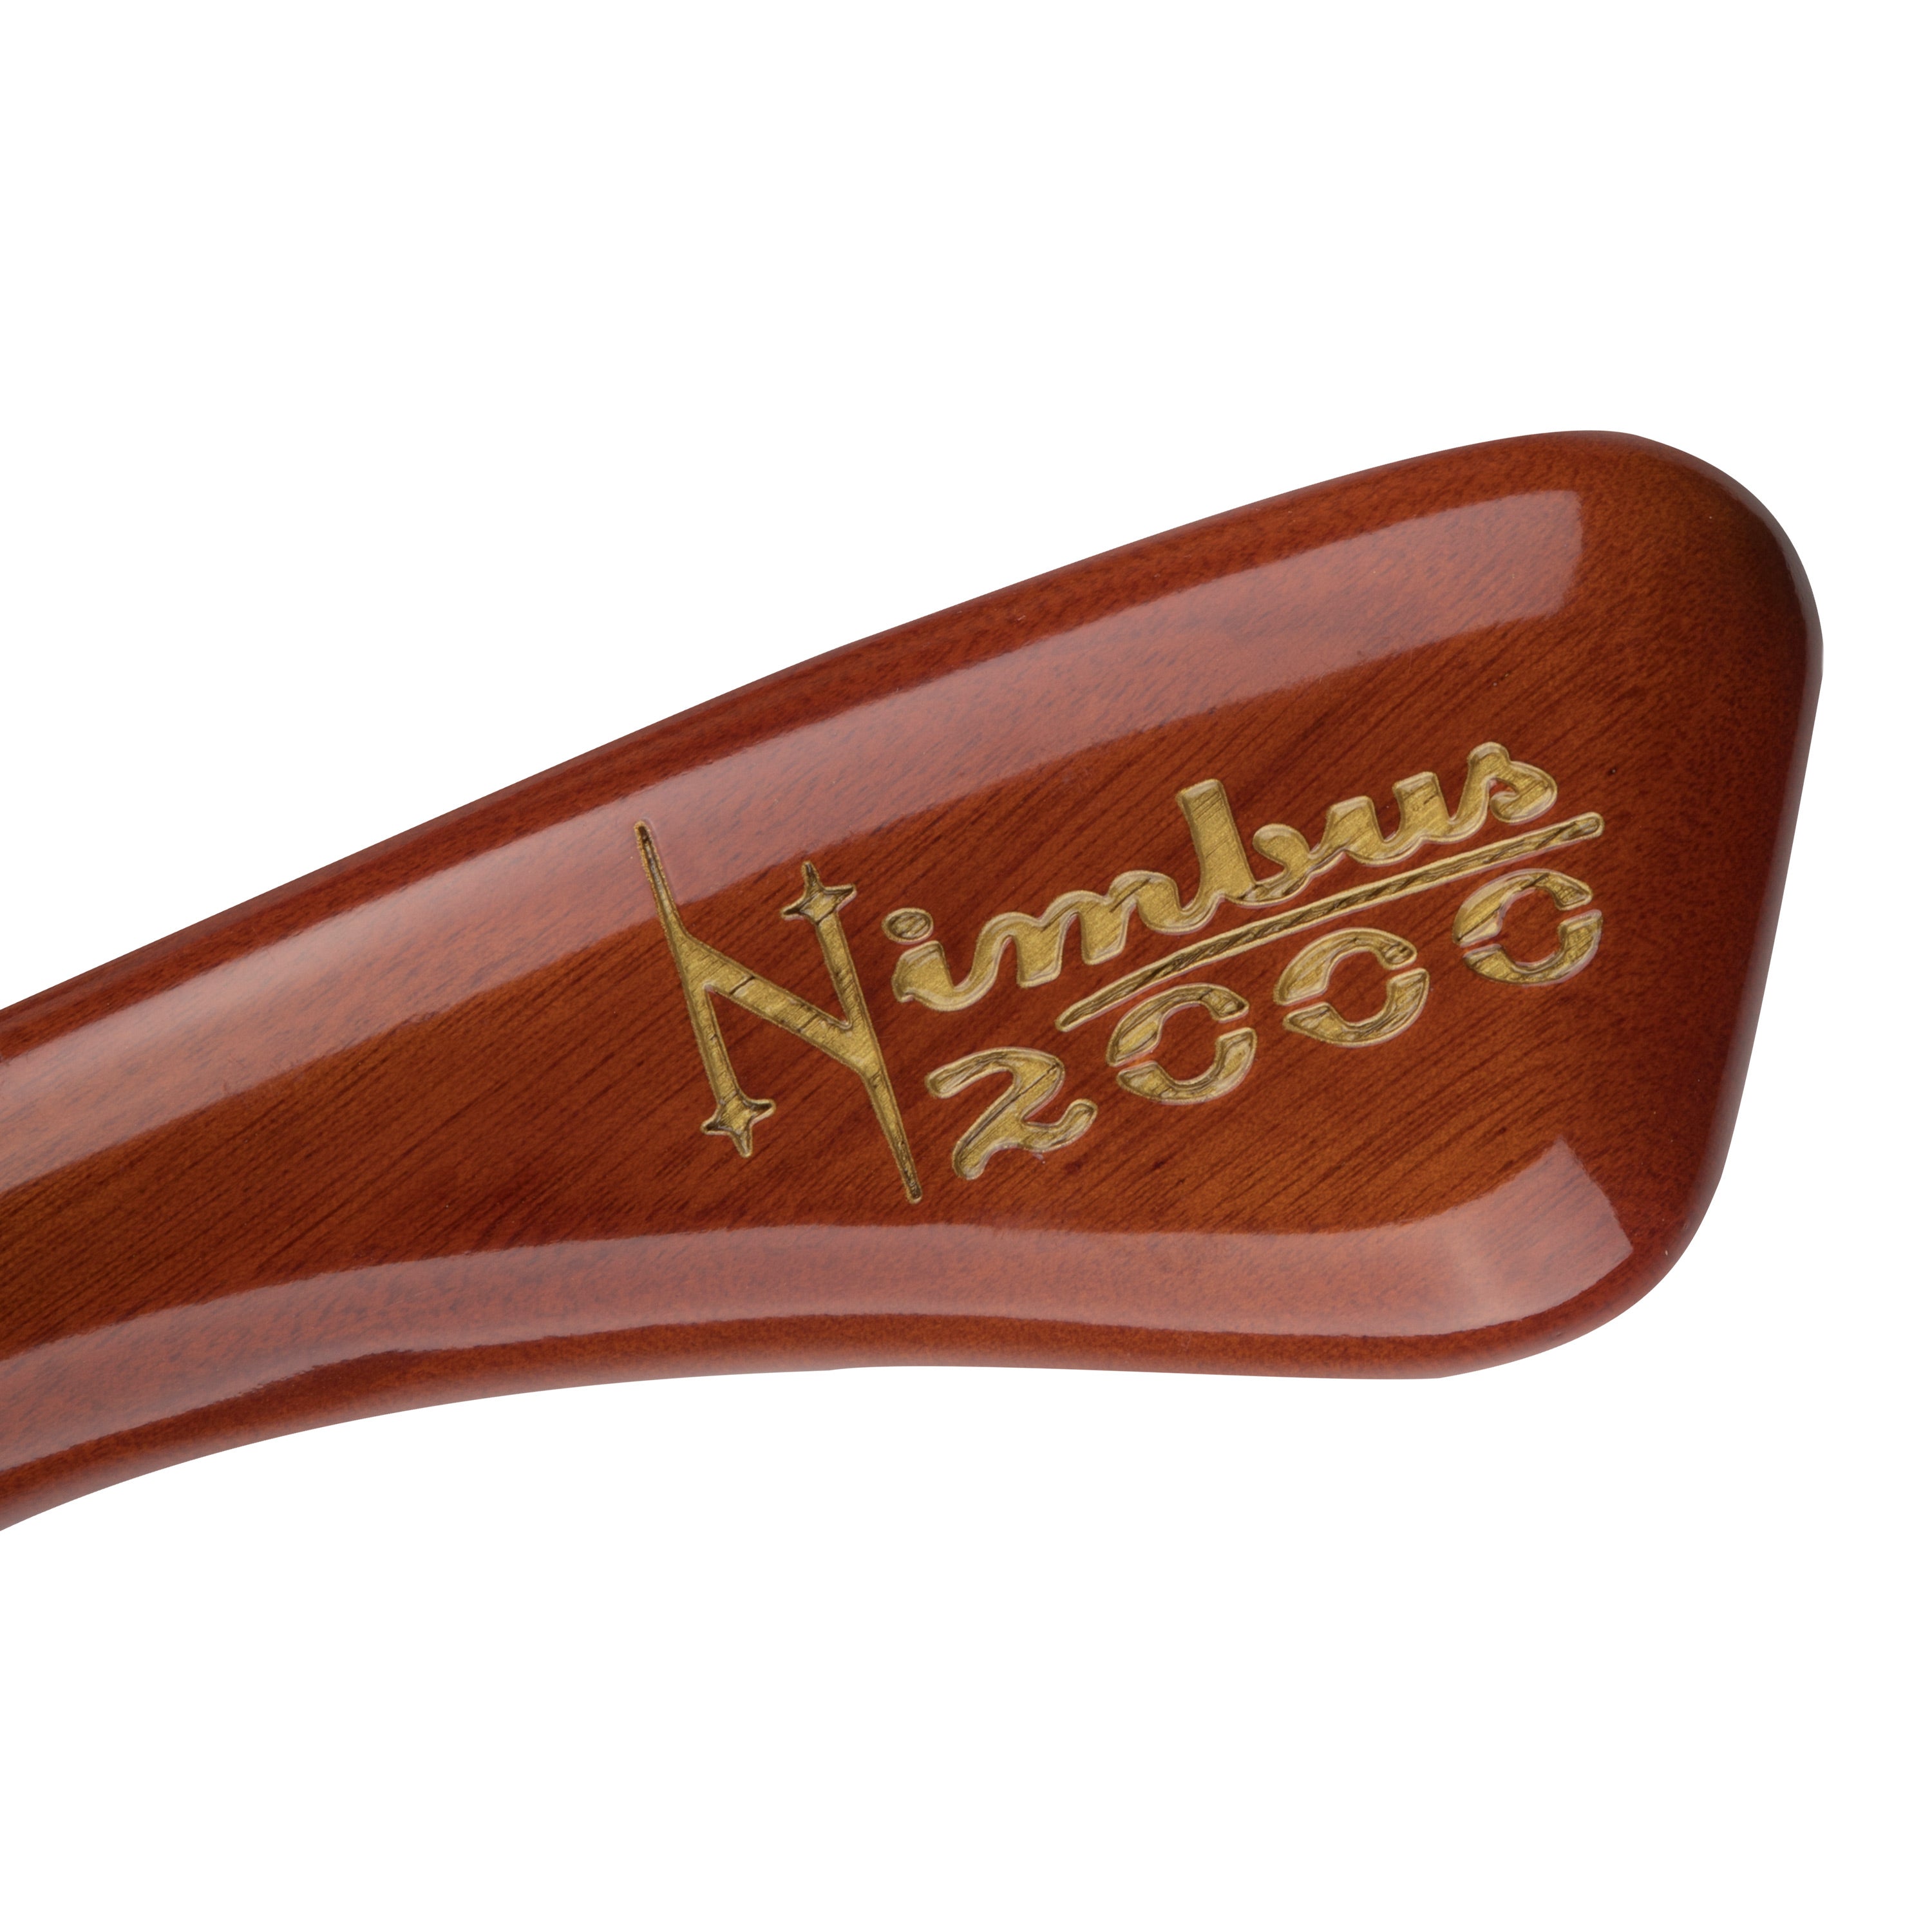 Nimbus 2000 Model Broom